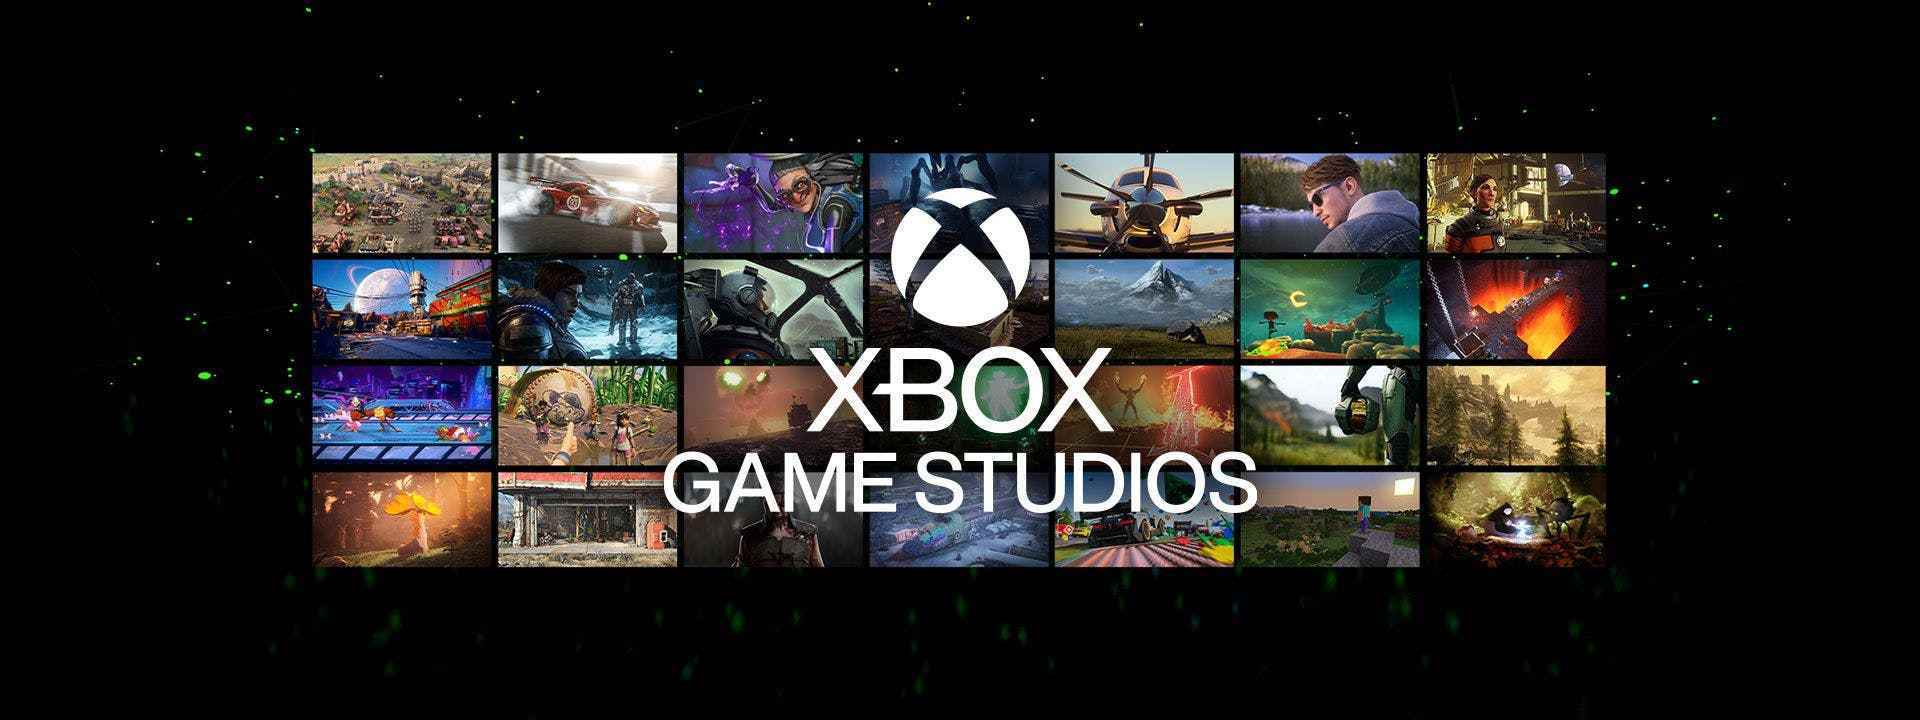 Xbox Game Studios oyunlarından ekran görüntülerini gösteren bir resim.